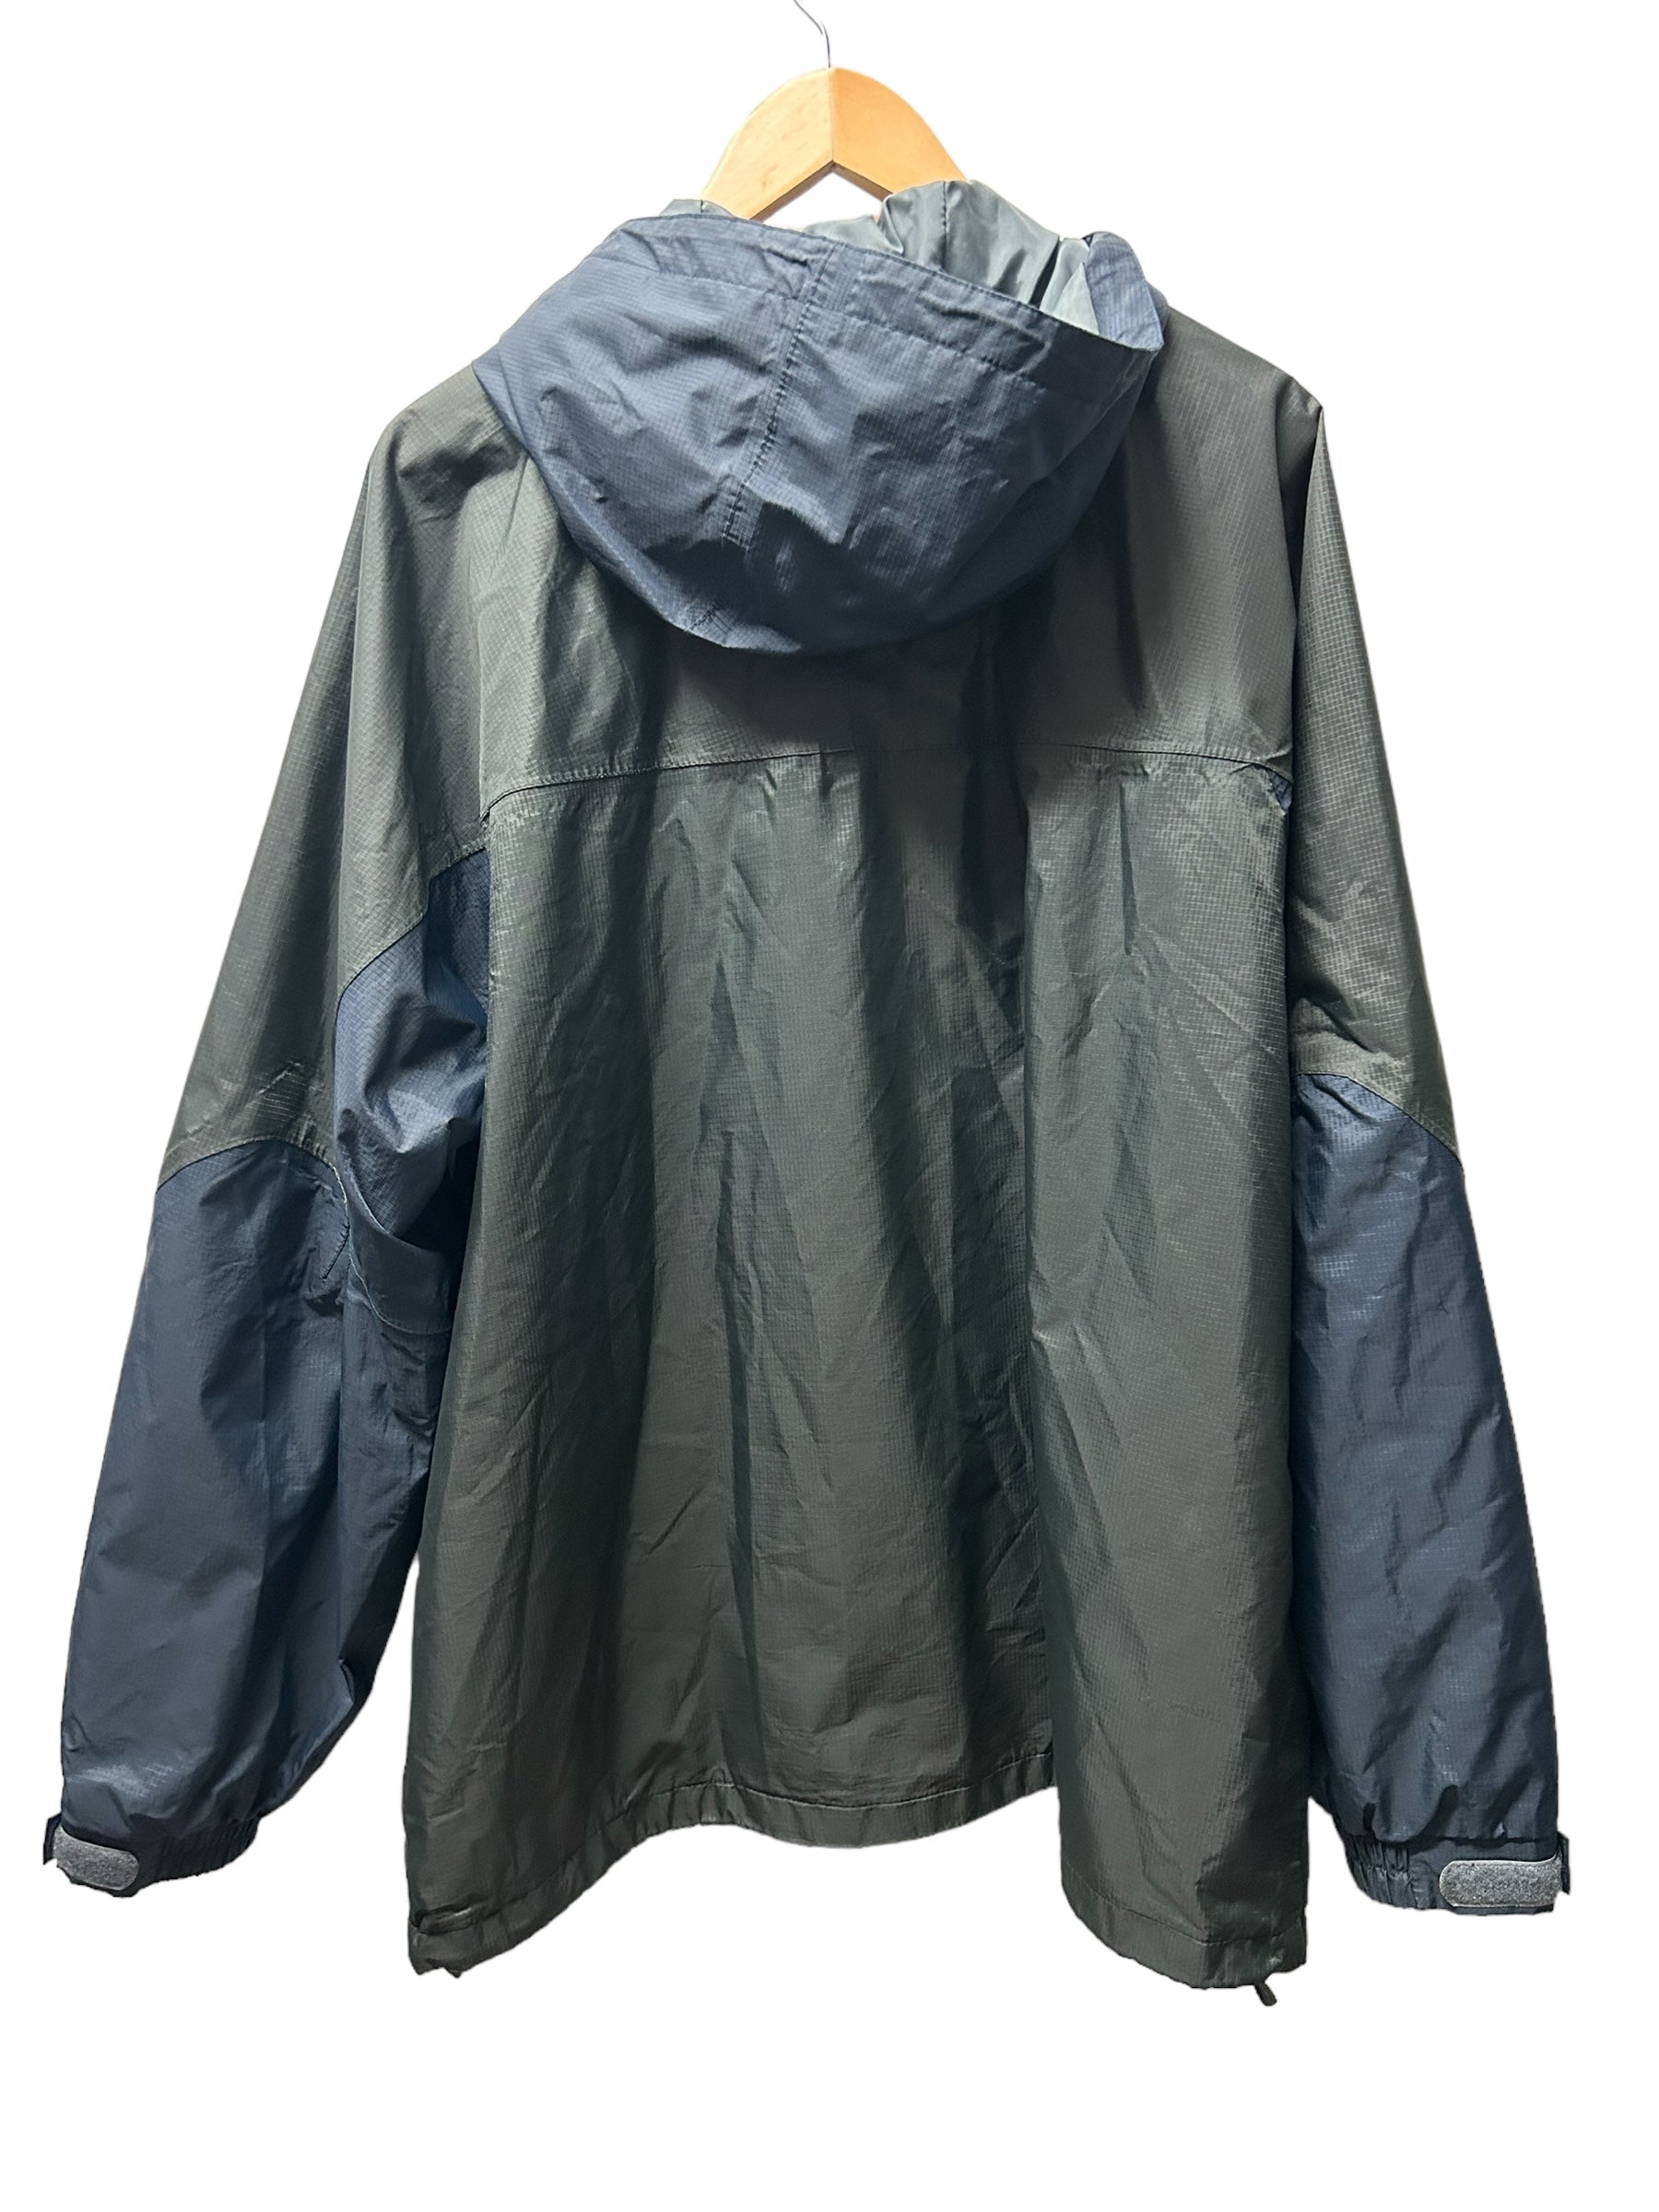 Helly Hansen Waterproof Jacket (XL)